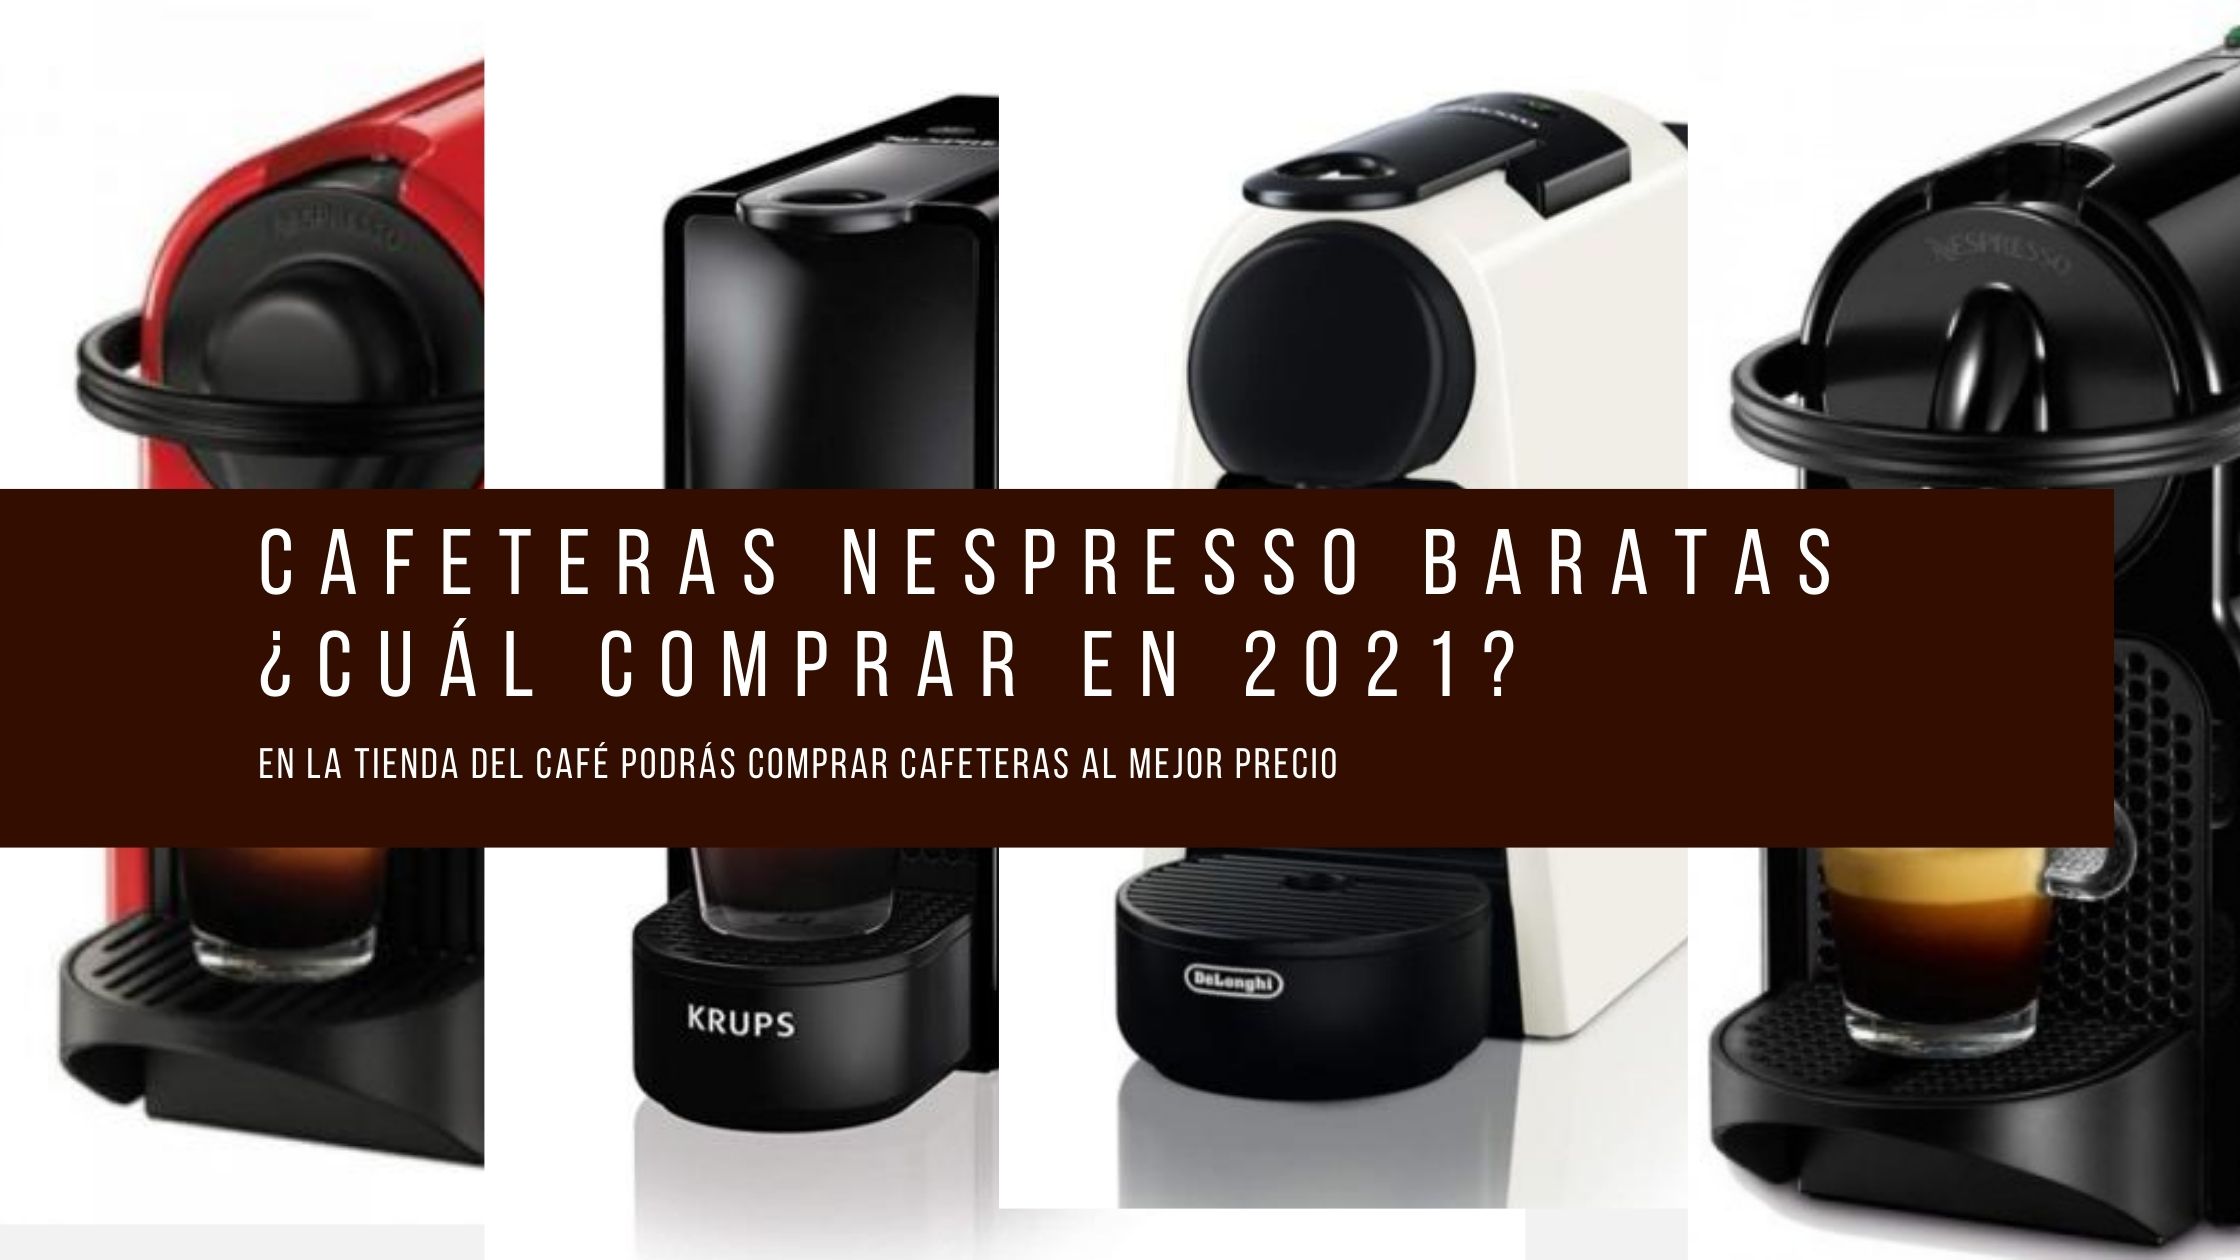 Cafeteras nespresso baratas ¿Cuál comprar en 2021?